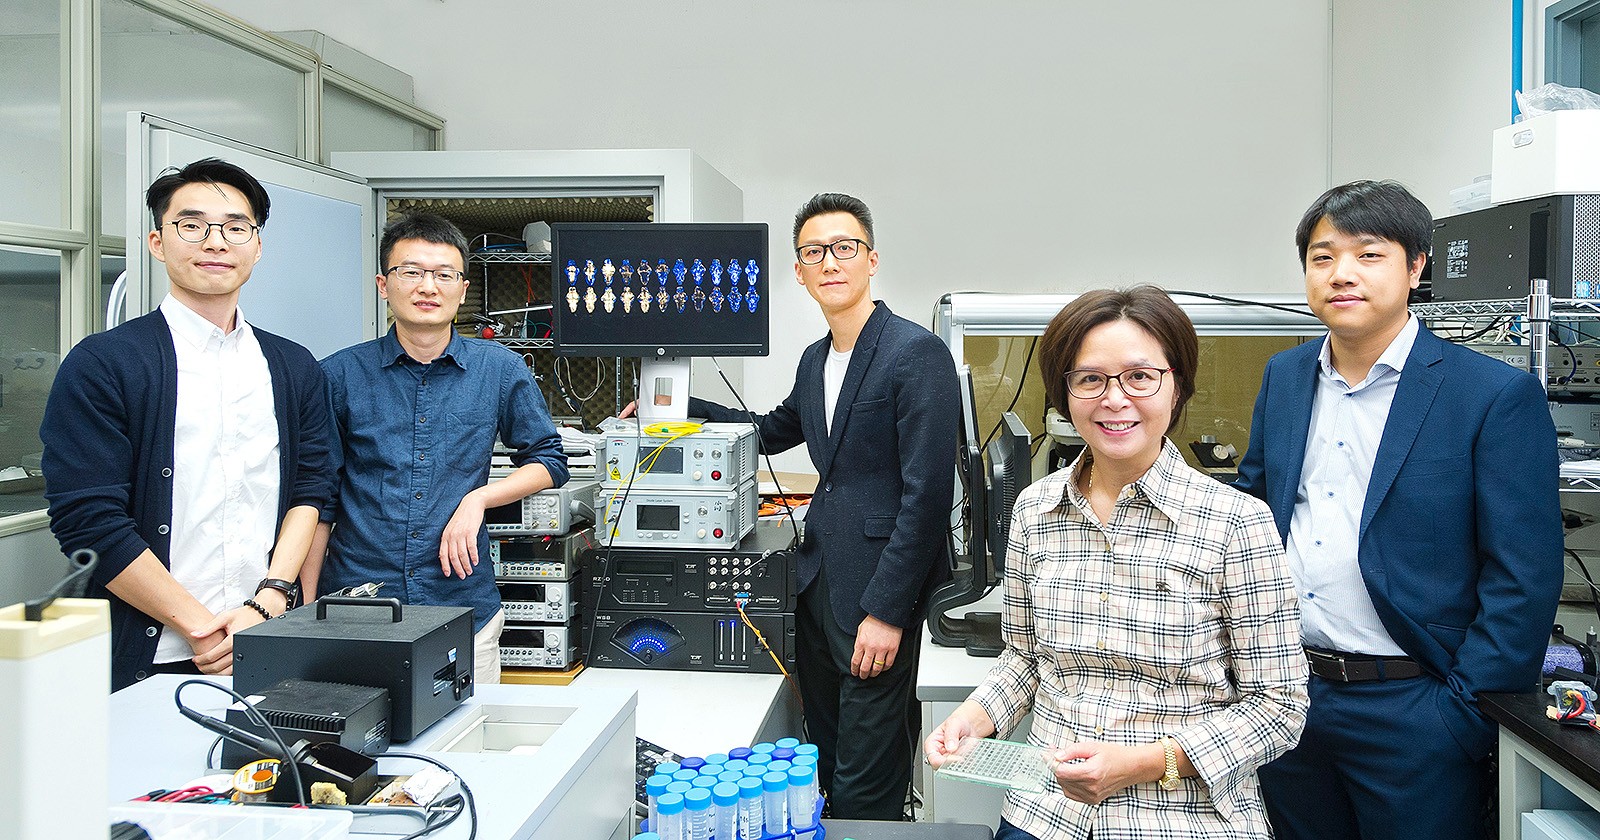 (From left) Mr Duan Xin, Dr Lin Xudong, Dr Shi Peng, Professor Cheng Shuk Han and Dr Wang Xin.